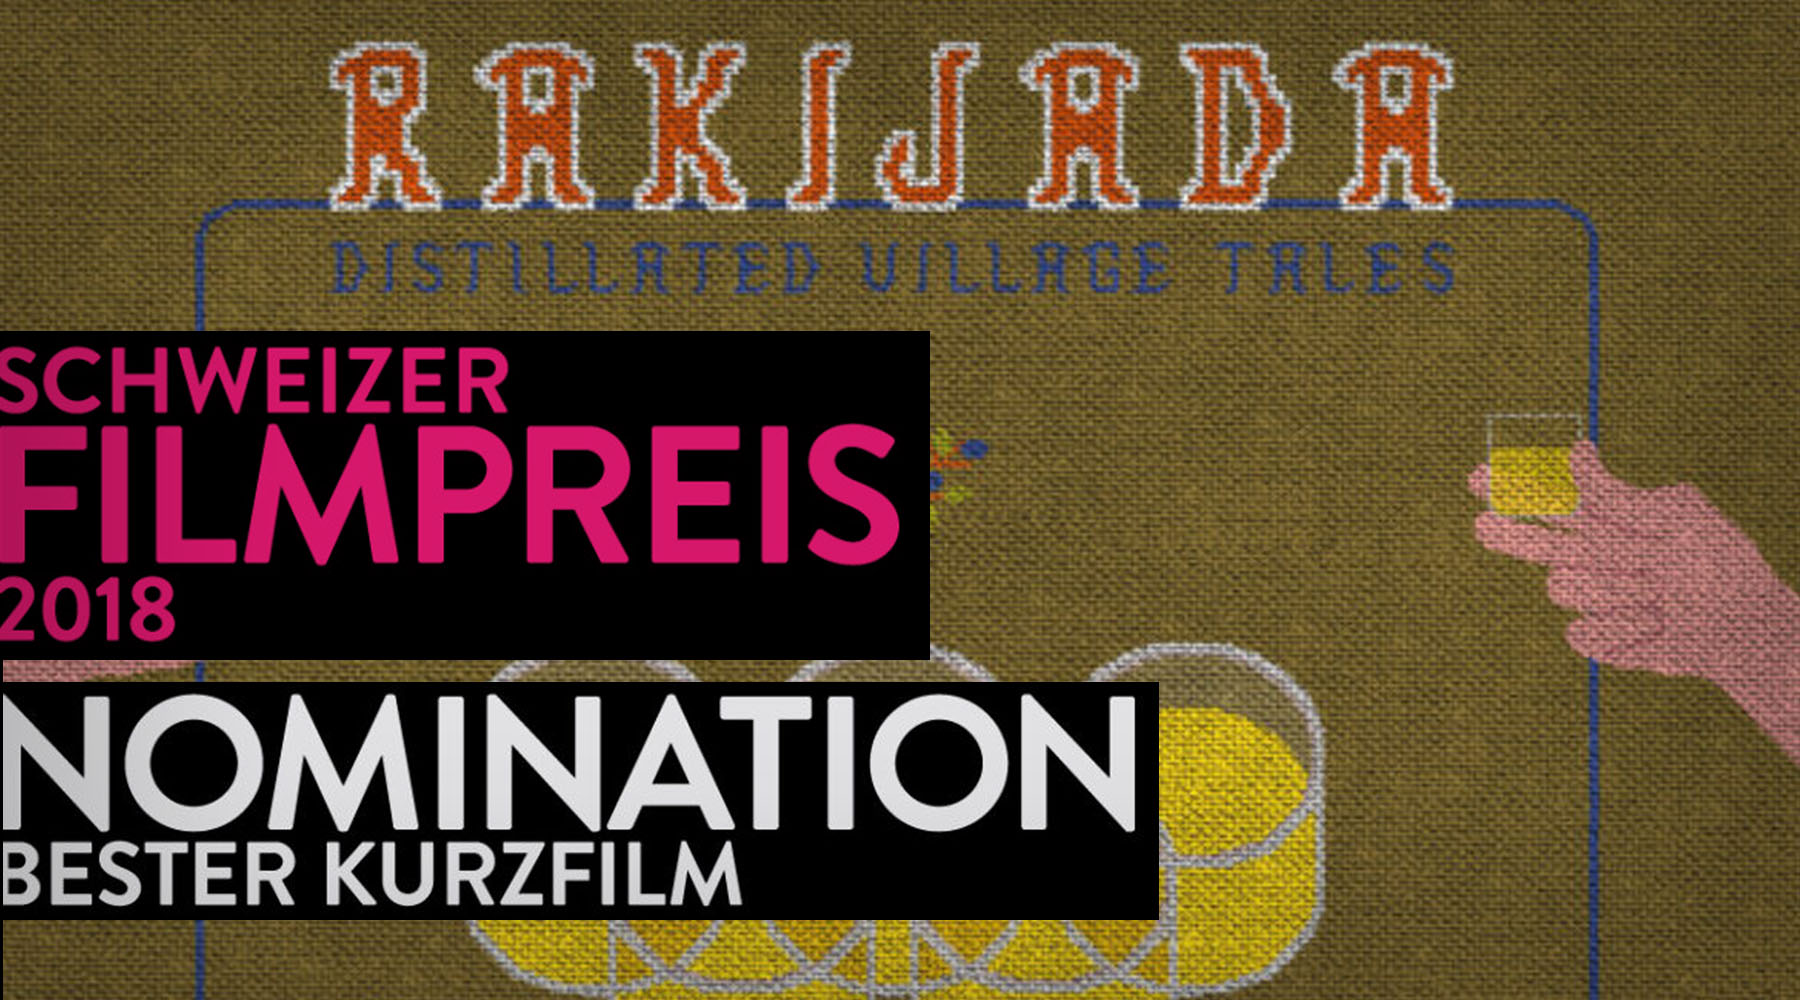 Nomination Schweizer Filmpreis